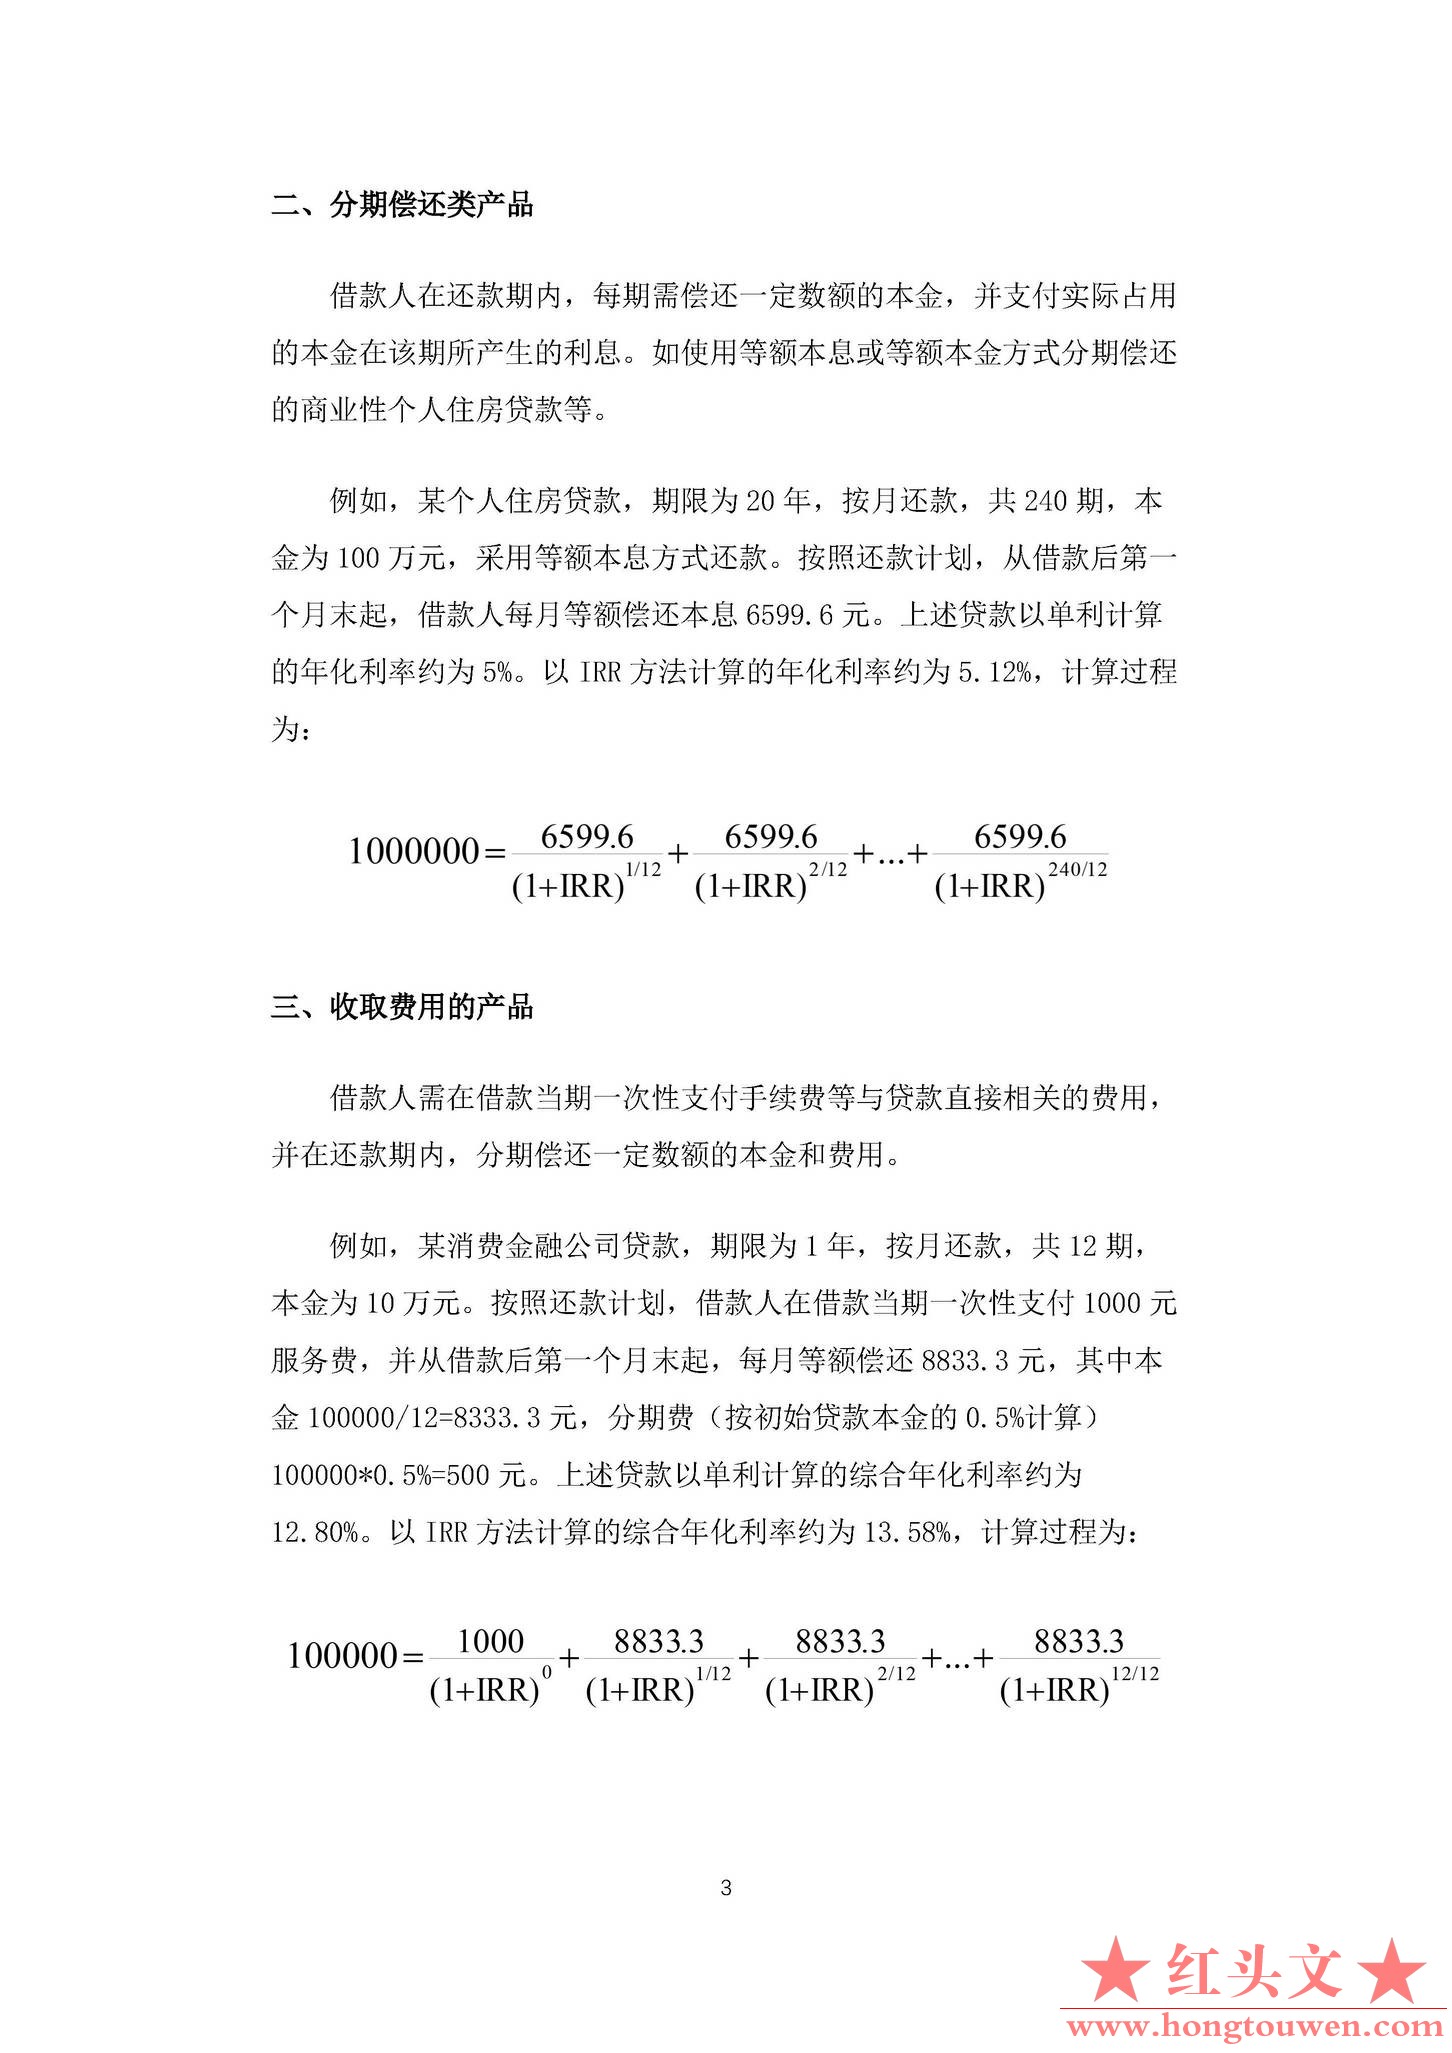 中国人民银行公告[2021]第3号-明示贷款年化利率_页面_3.jpg